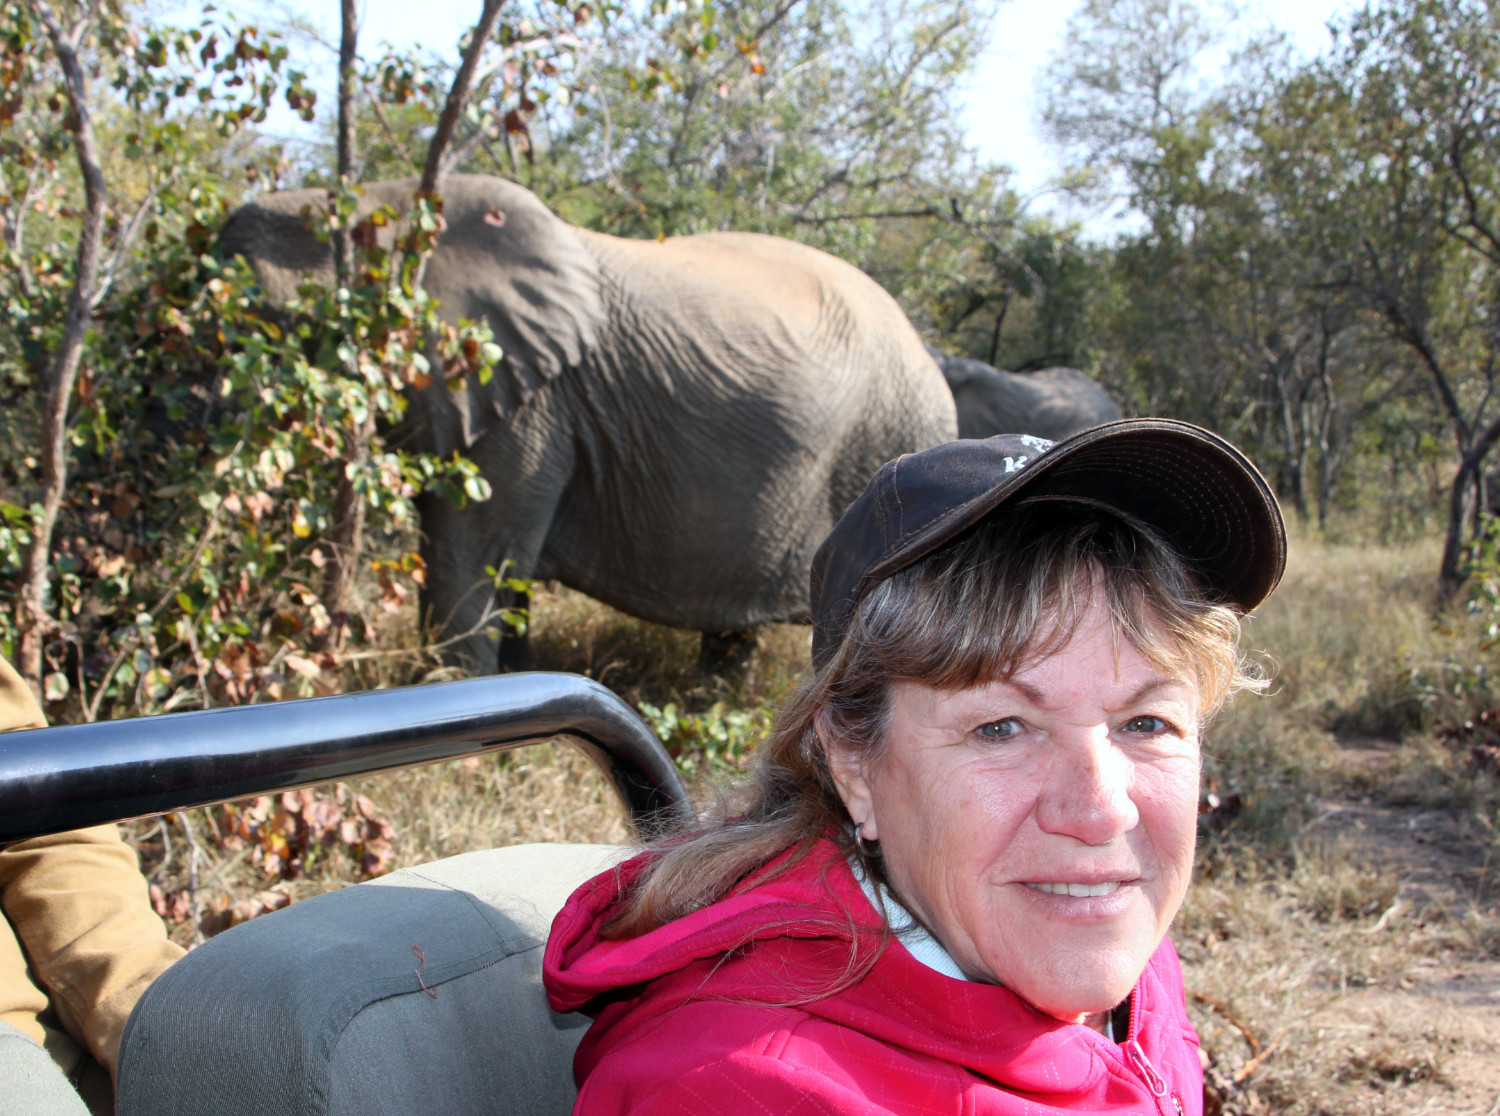 Kathy with Elephants